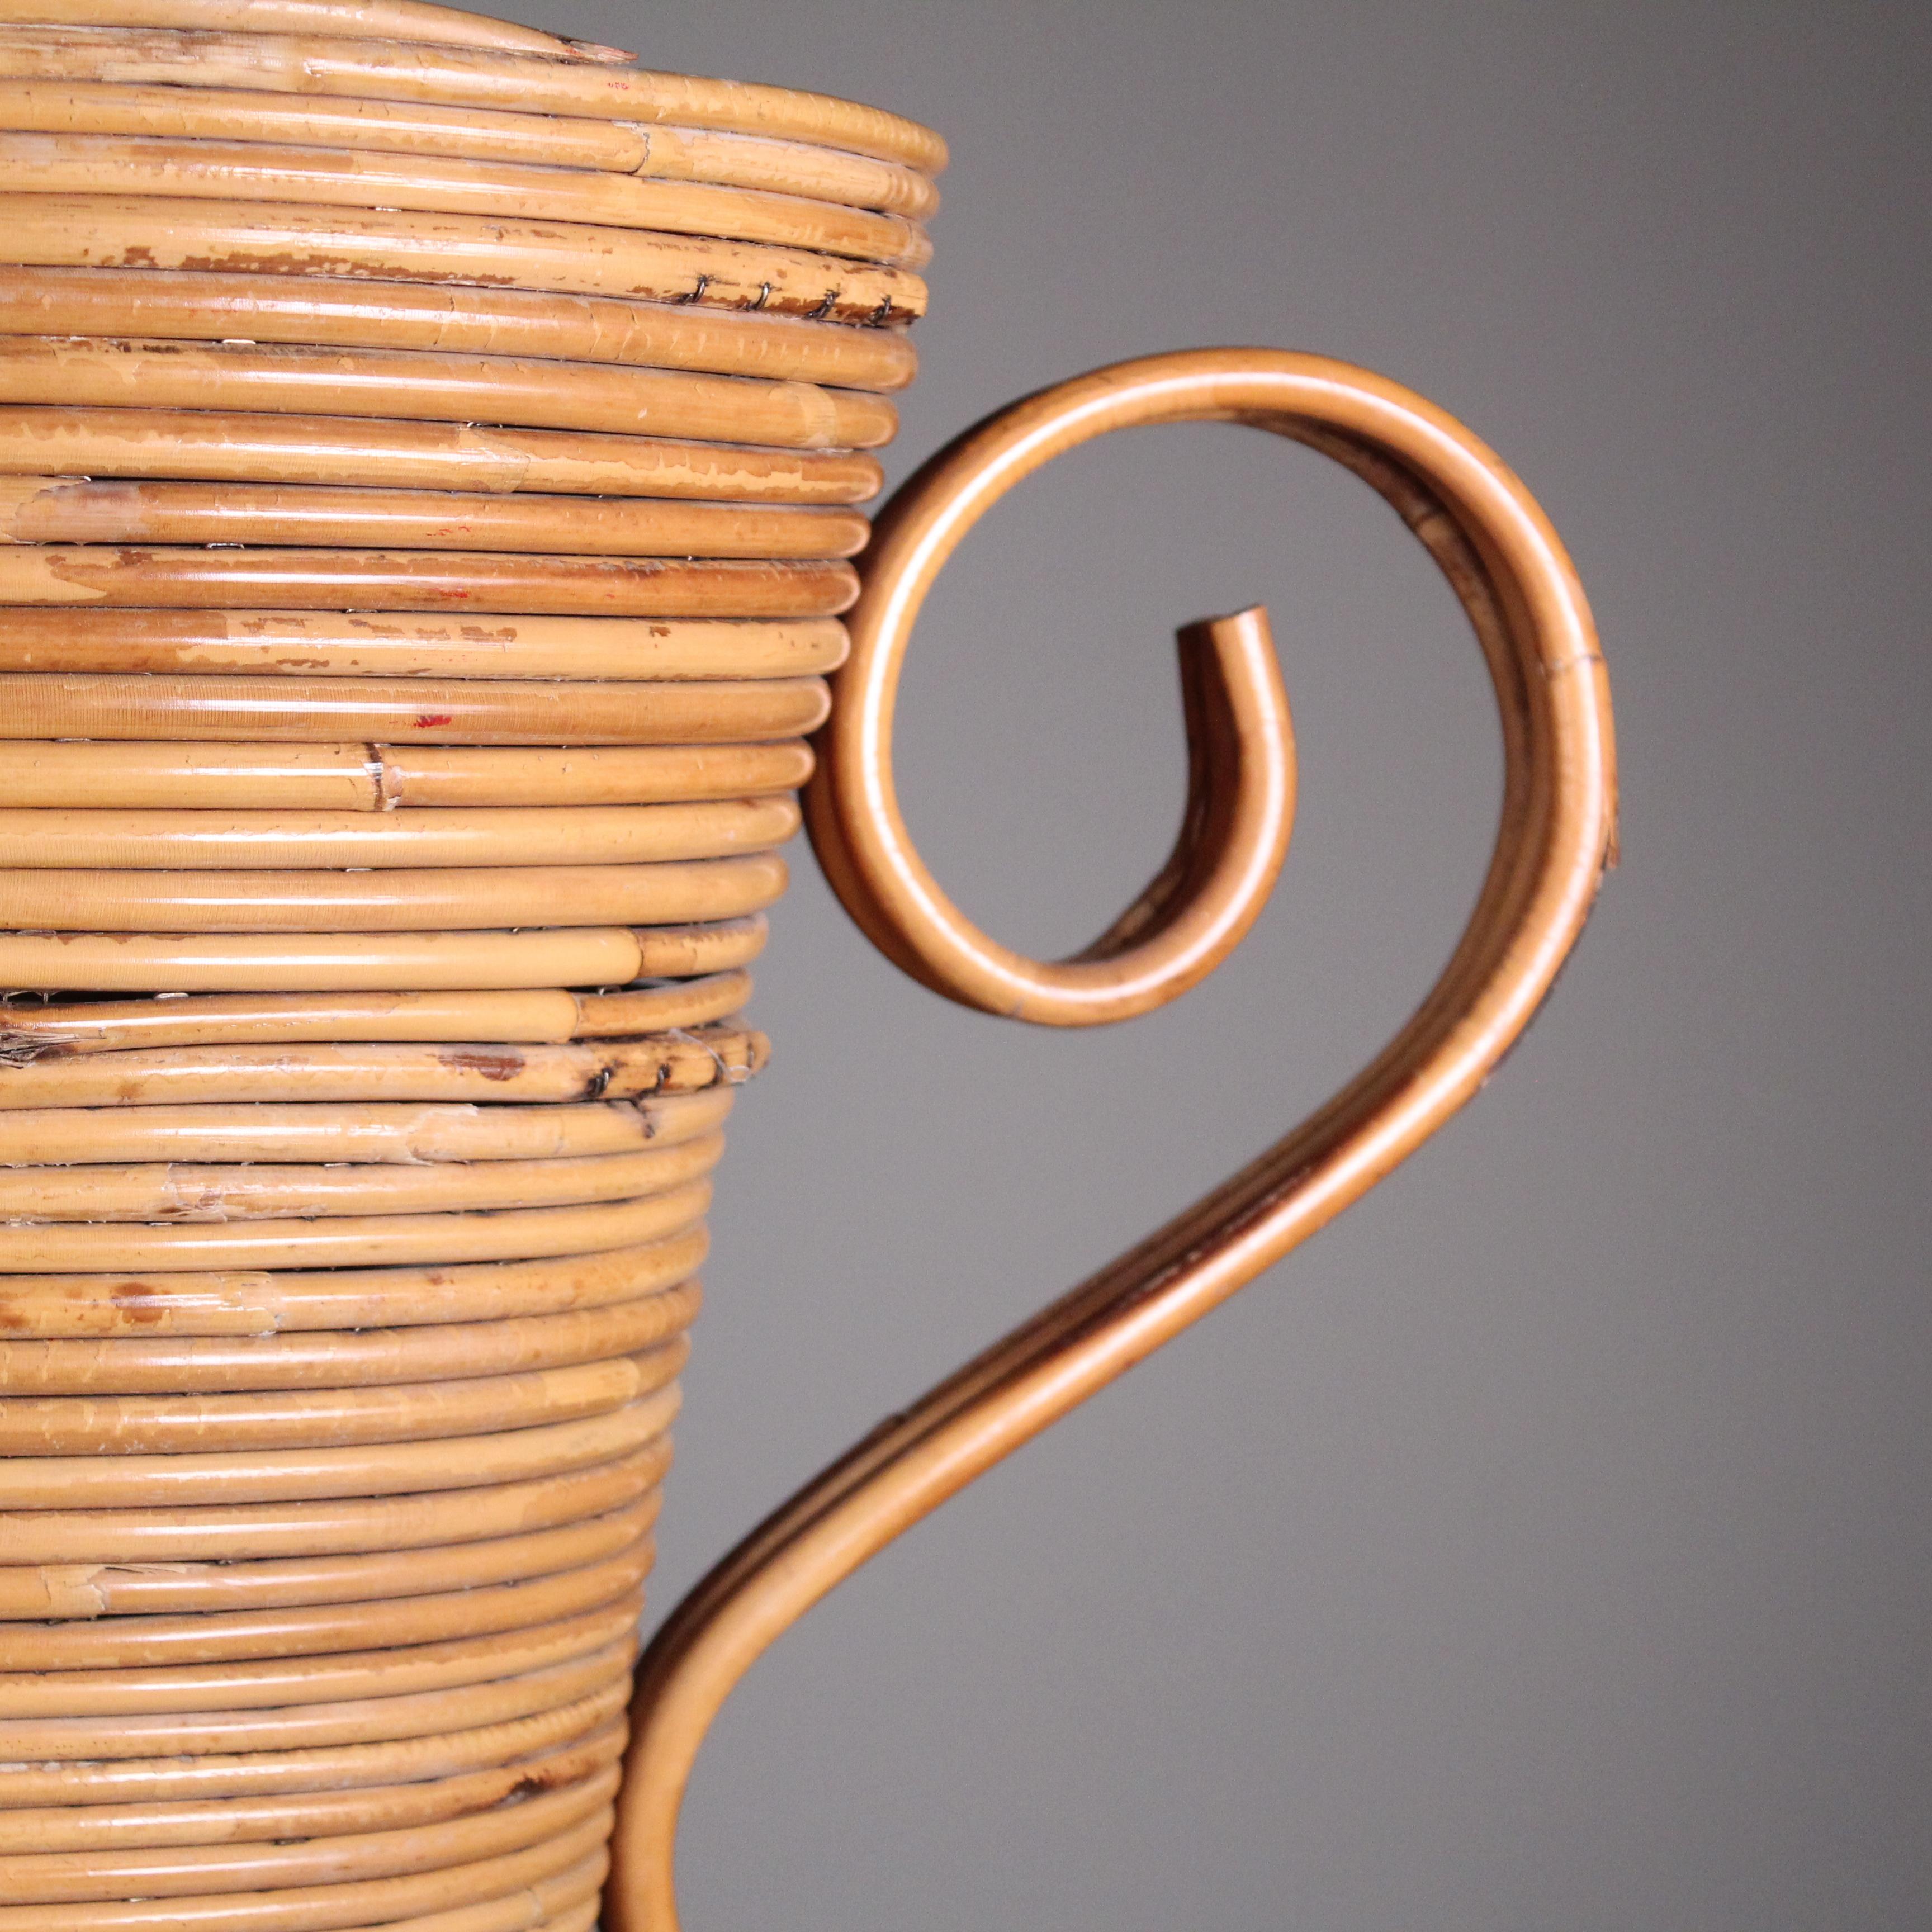 Versetzen Sie sich mit der Rattan-Vase von Vivai del Sud in den böhmischen Charme des Jahres 1969 zurück. Dieses Design-Schmuckstück fängt die Essenz der entspannten Raffinesse dieser Ära ein und ist eine nostalgische Verbeugung vor dem Geist der